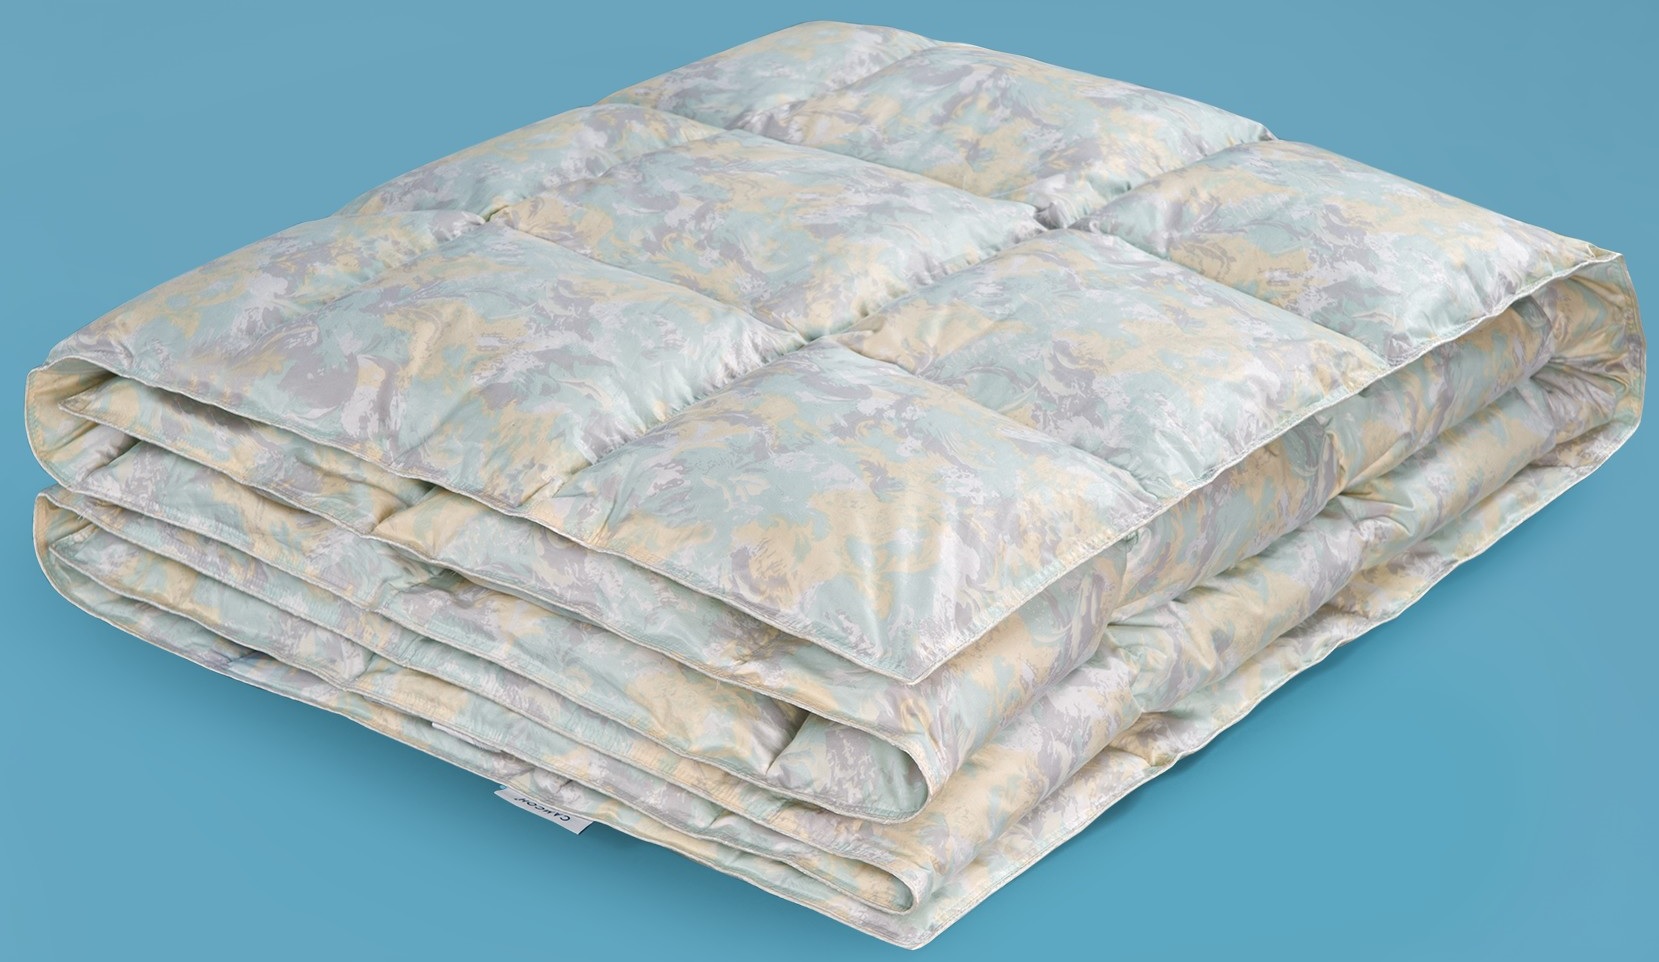 Купить недорого пуховое одеяло самсон в москве